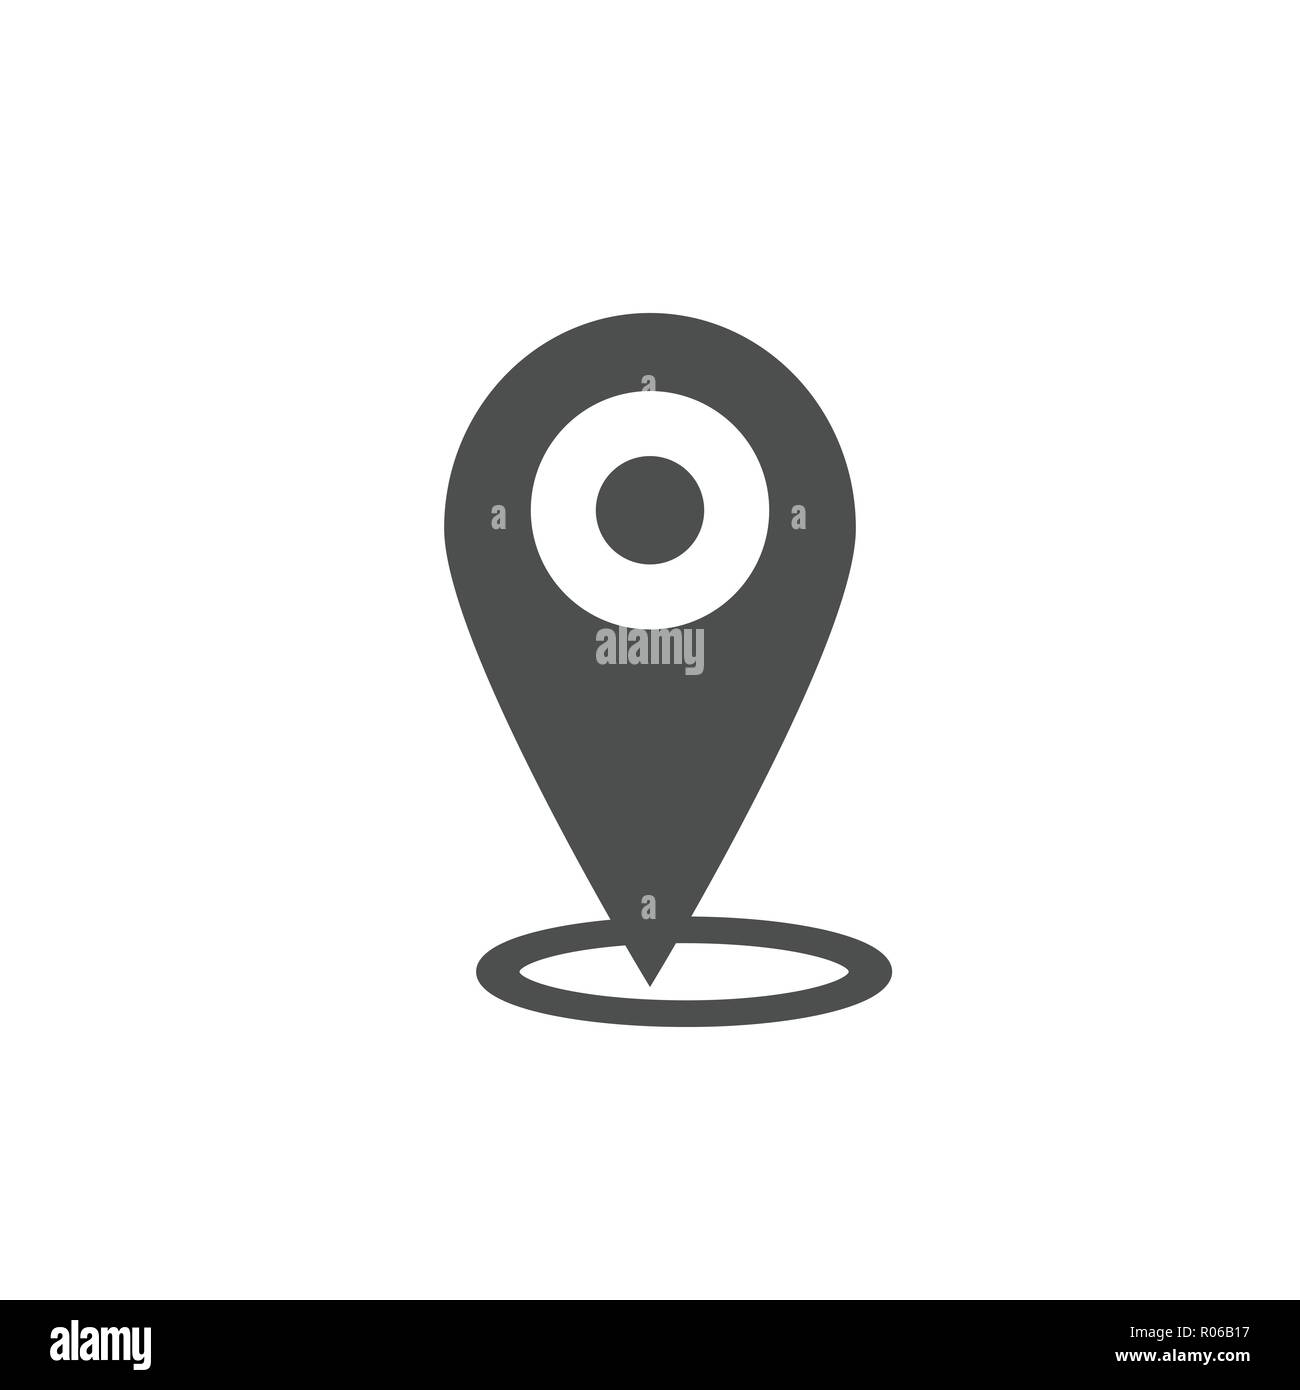 Kartenzeiger Symbol. GPS-Symbol. Flache Bauform. Schwarz auf weißem Hintergrund Vektor Illustration. Stock Vektor